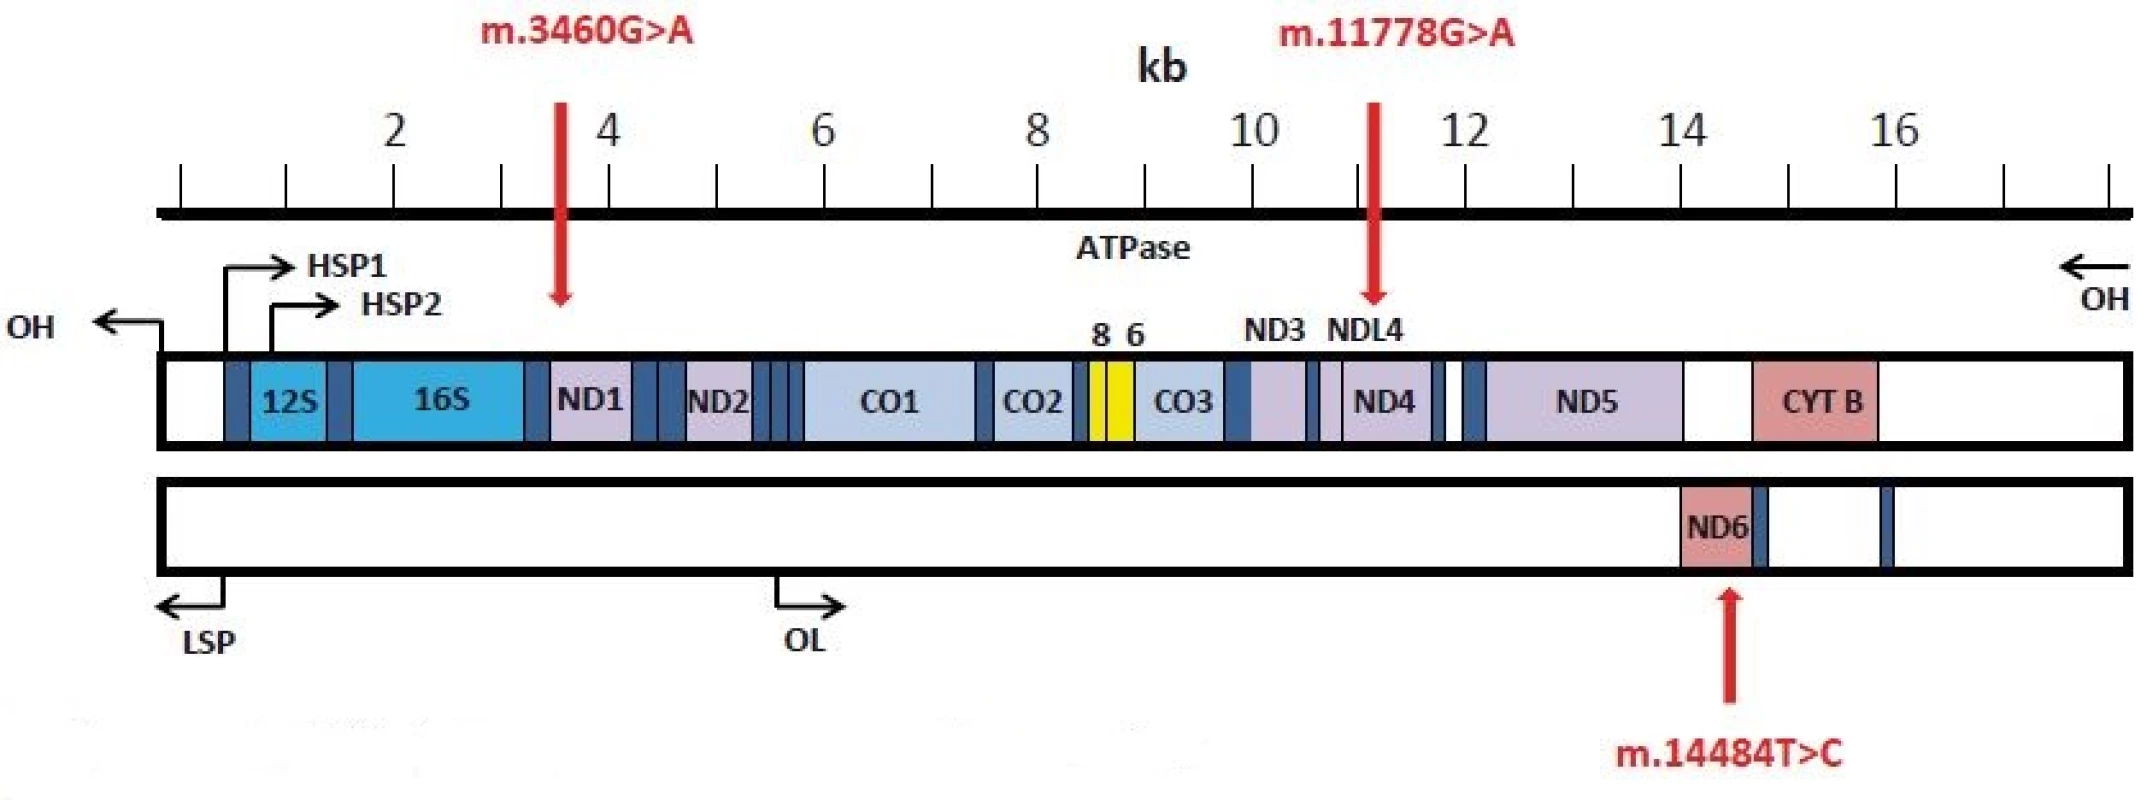 Linearizovaná strukturální mapa mitochondriální DNA (převzato z [111]). 
Červené šipky označují 3 LHON prevalentní mutace v genech kódujících ND1, ND4 a ND6 podjednotky komplexu I.
Fig. 1. The linearized structural map of the human mtDNA (modified from [111]).
The three prevalent LHON mutations in genes encoding ND1, ND4 and ND6 subunits of the Complex I are marked by arrows.